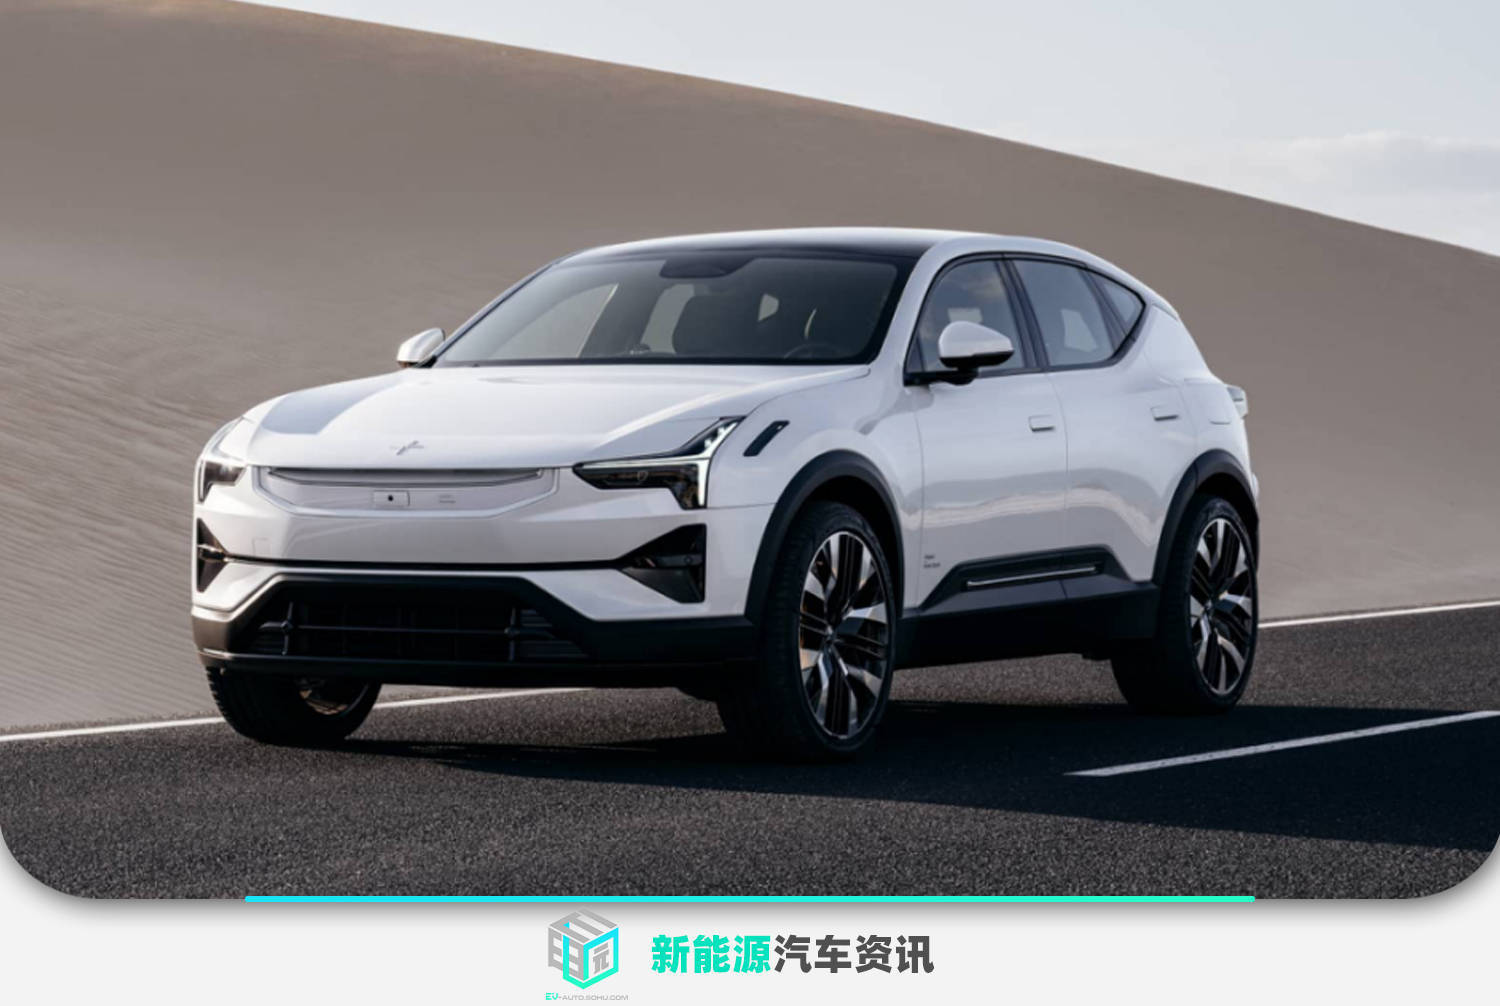 极星3纯电动SUV全球首发 中国区售价88万元起